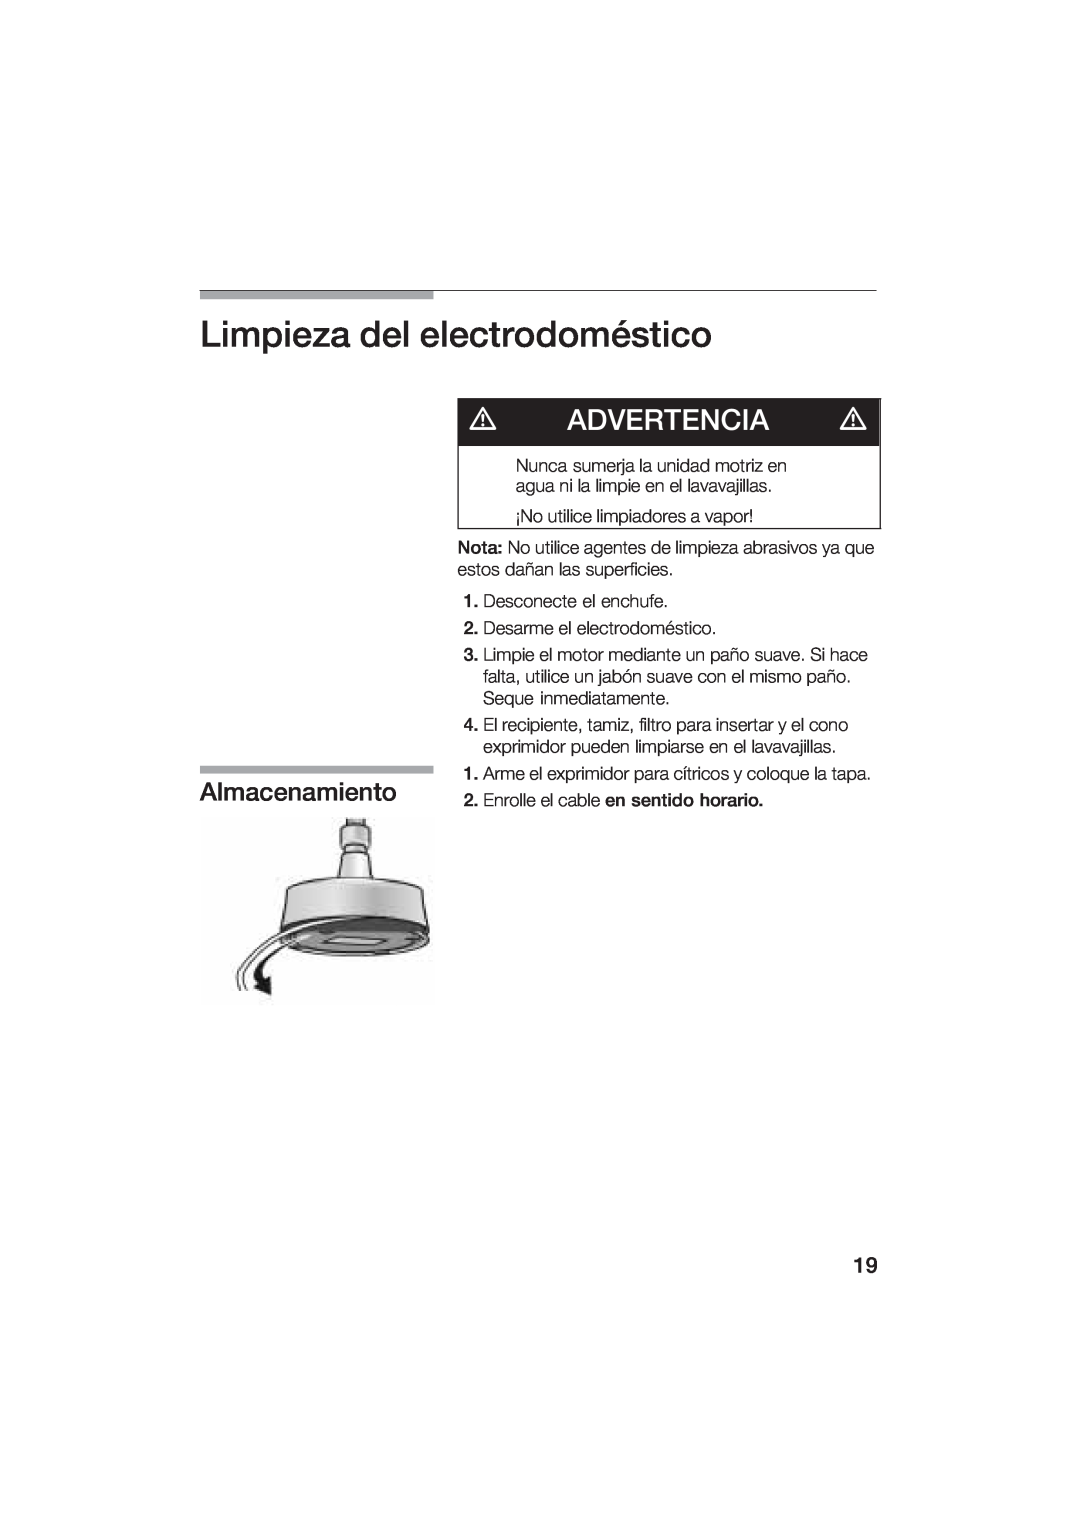 Bosch Appliances MCP 3500 manual Limpieza del electrodomstico, Advertencia, Almacenamiento 